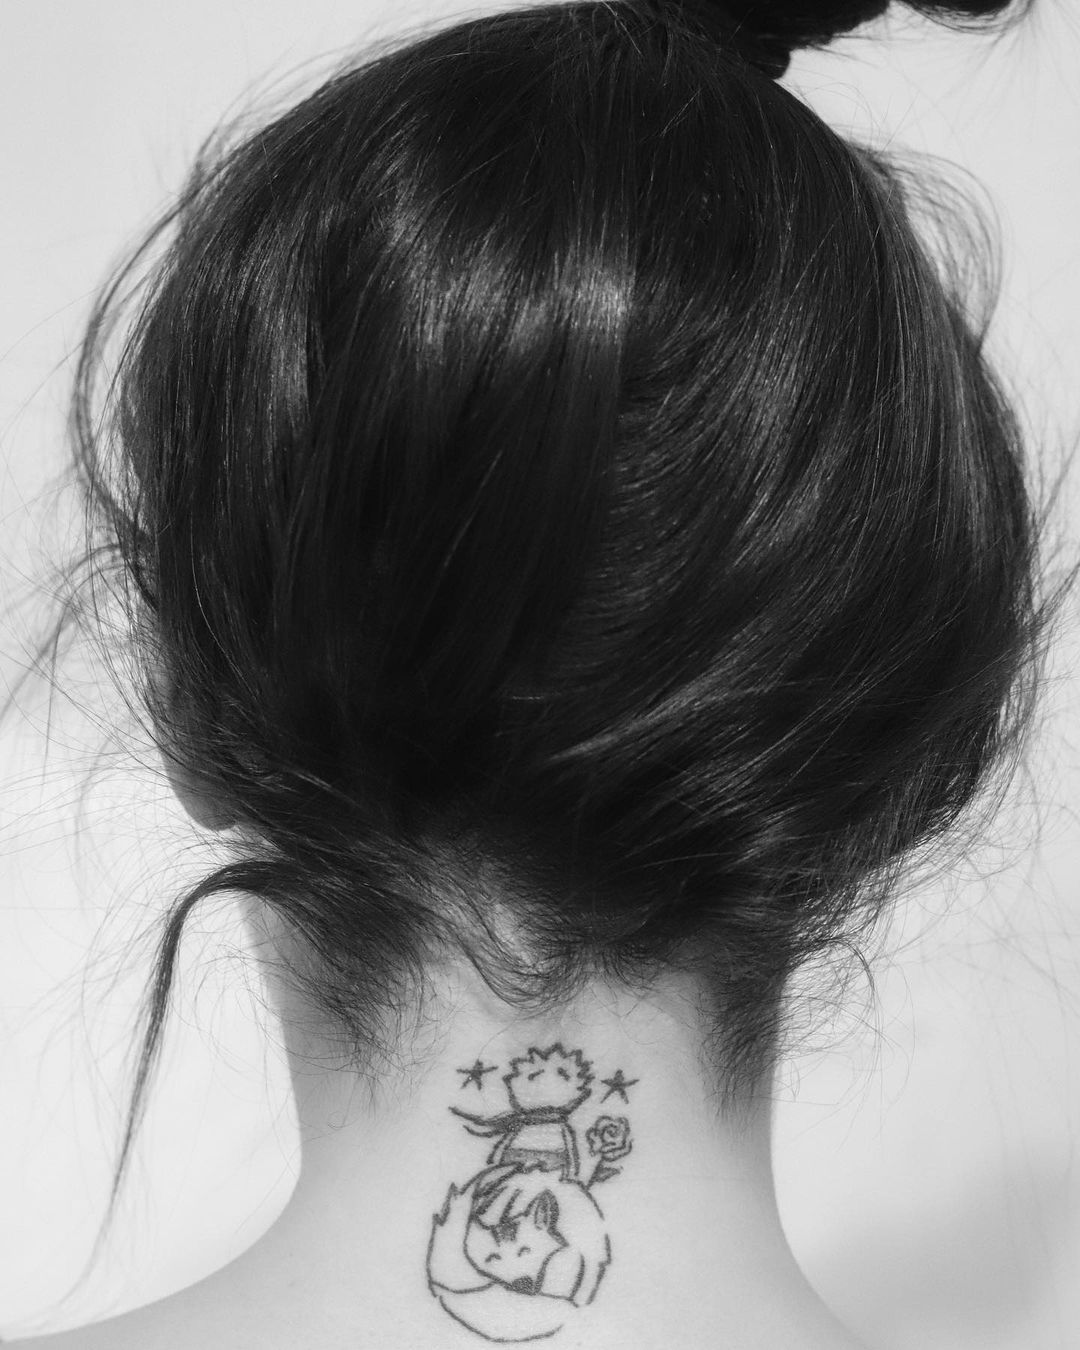 Imagem mostra tatuagens literárias